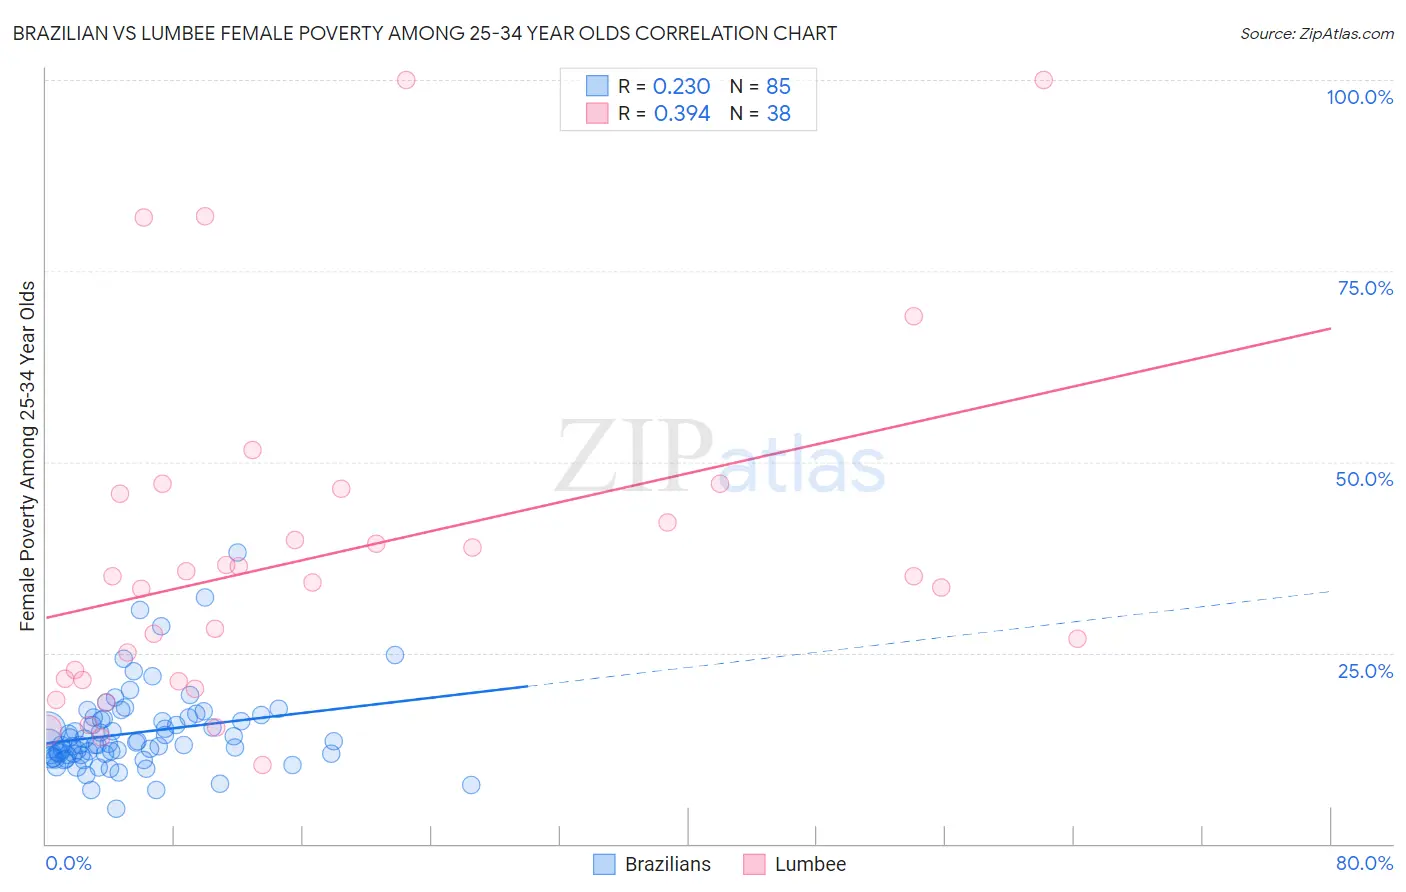 Brazilian vs Lumbee Female Poverty Among 25-34 Year Olds